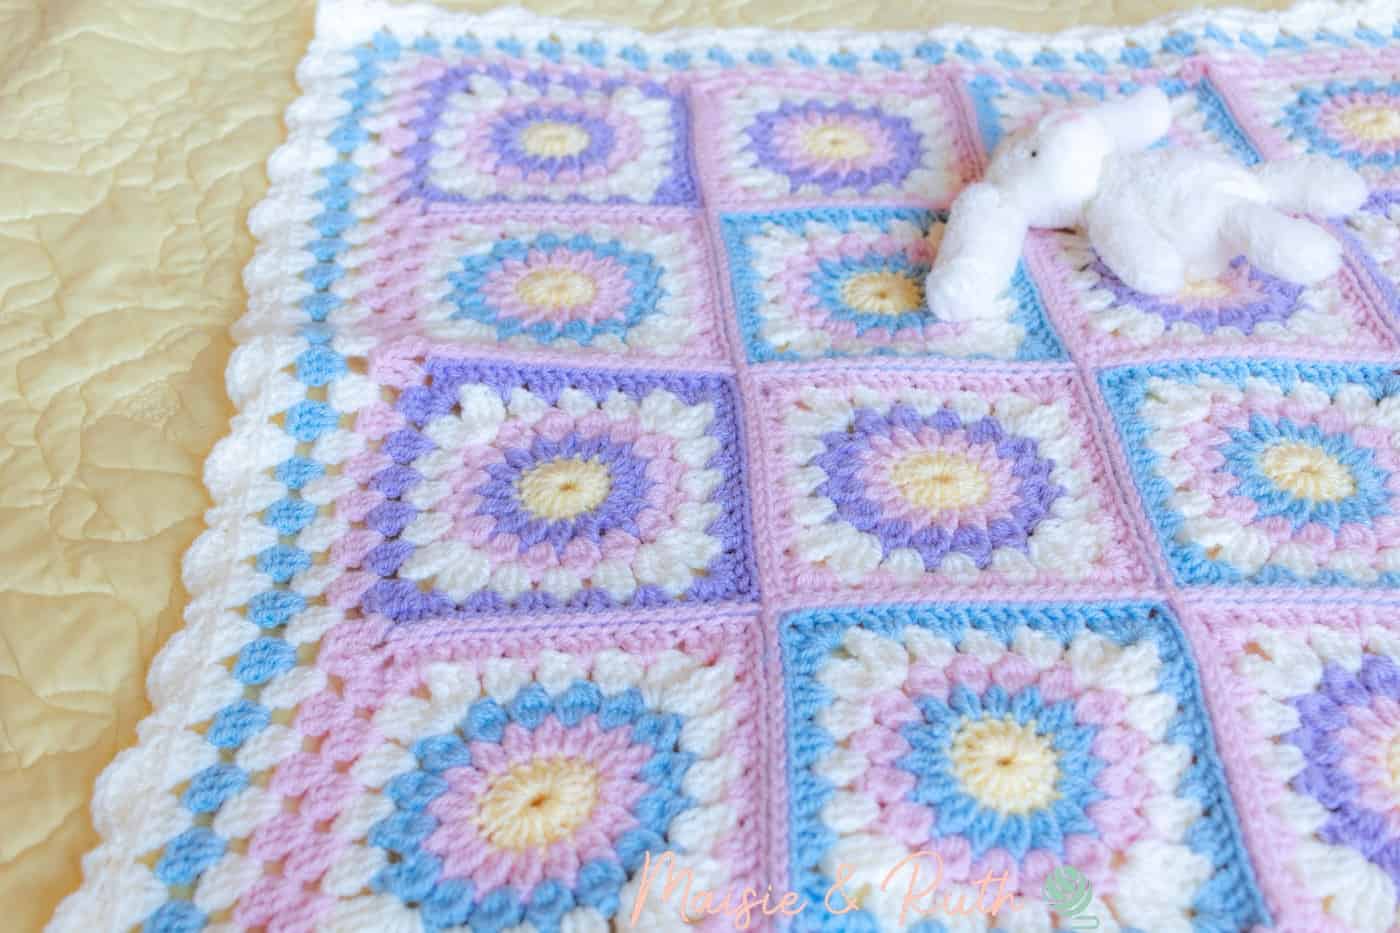 Crochet Sunburst Granny Square Blanket on Bed